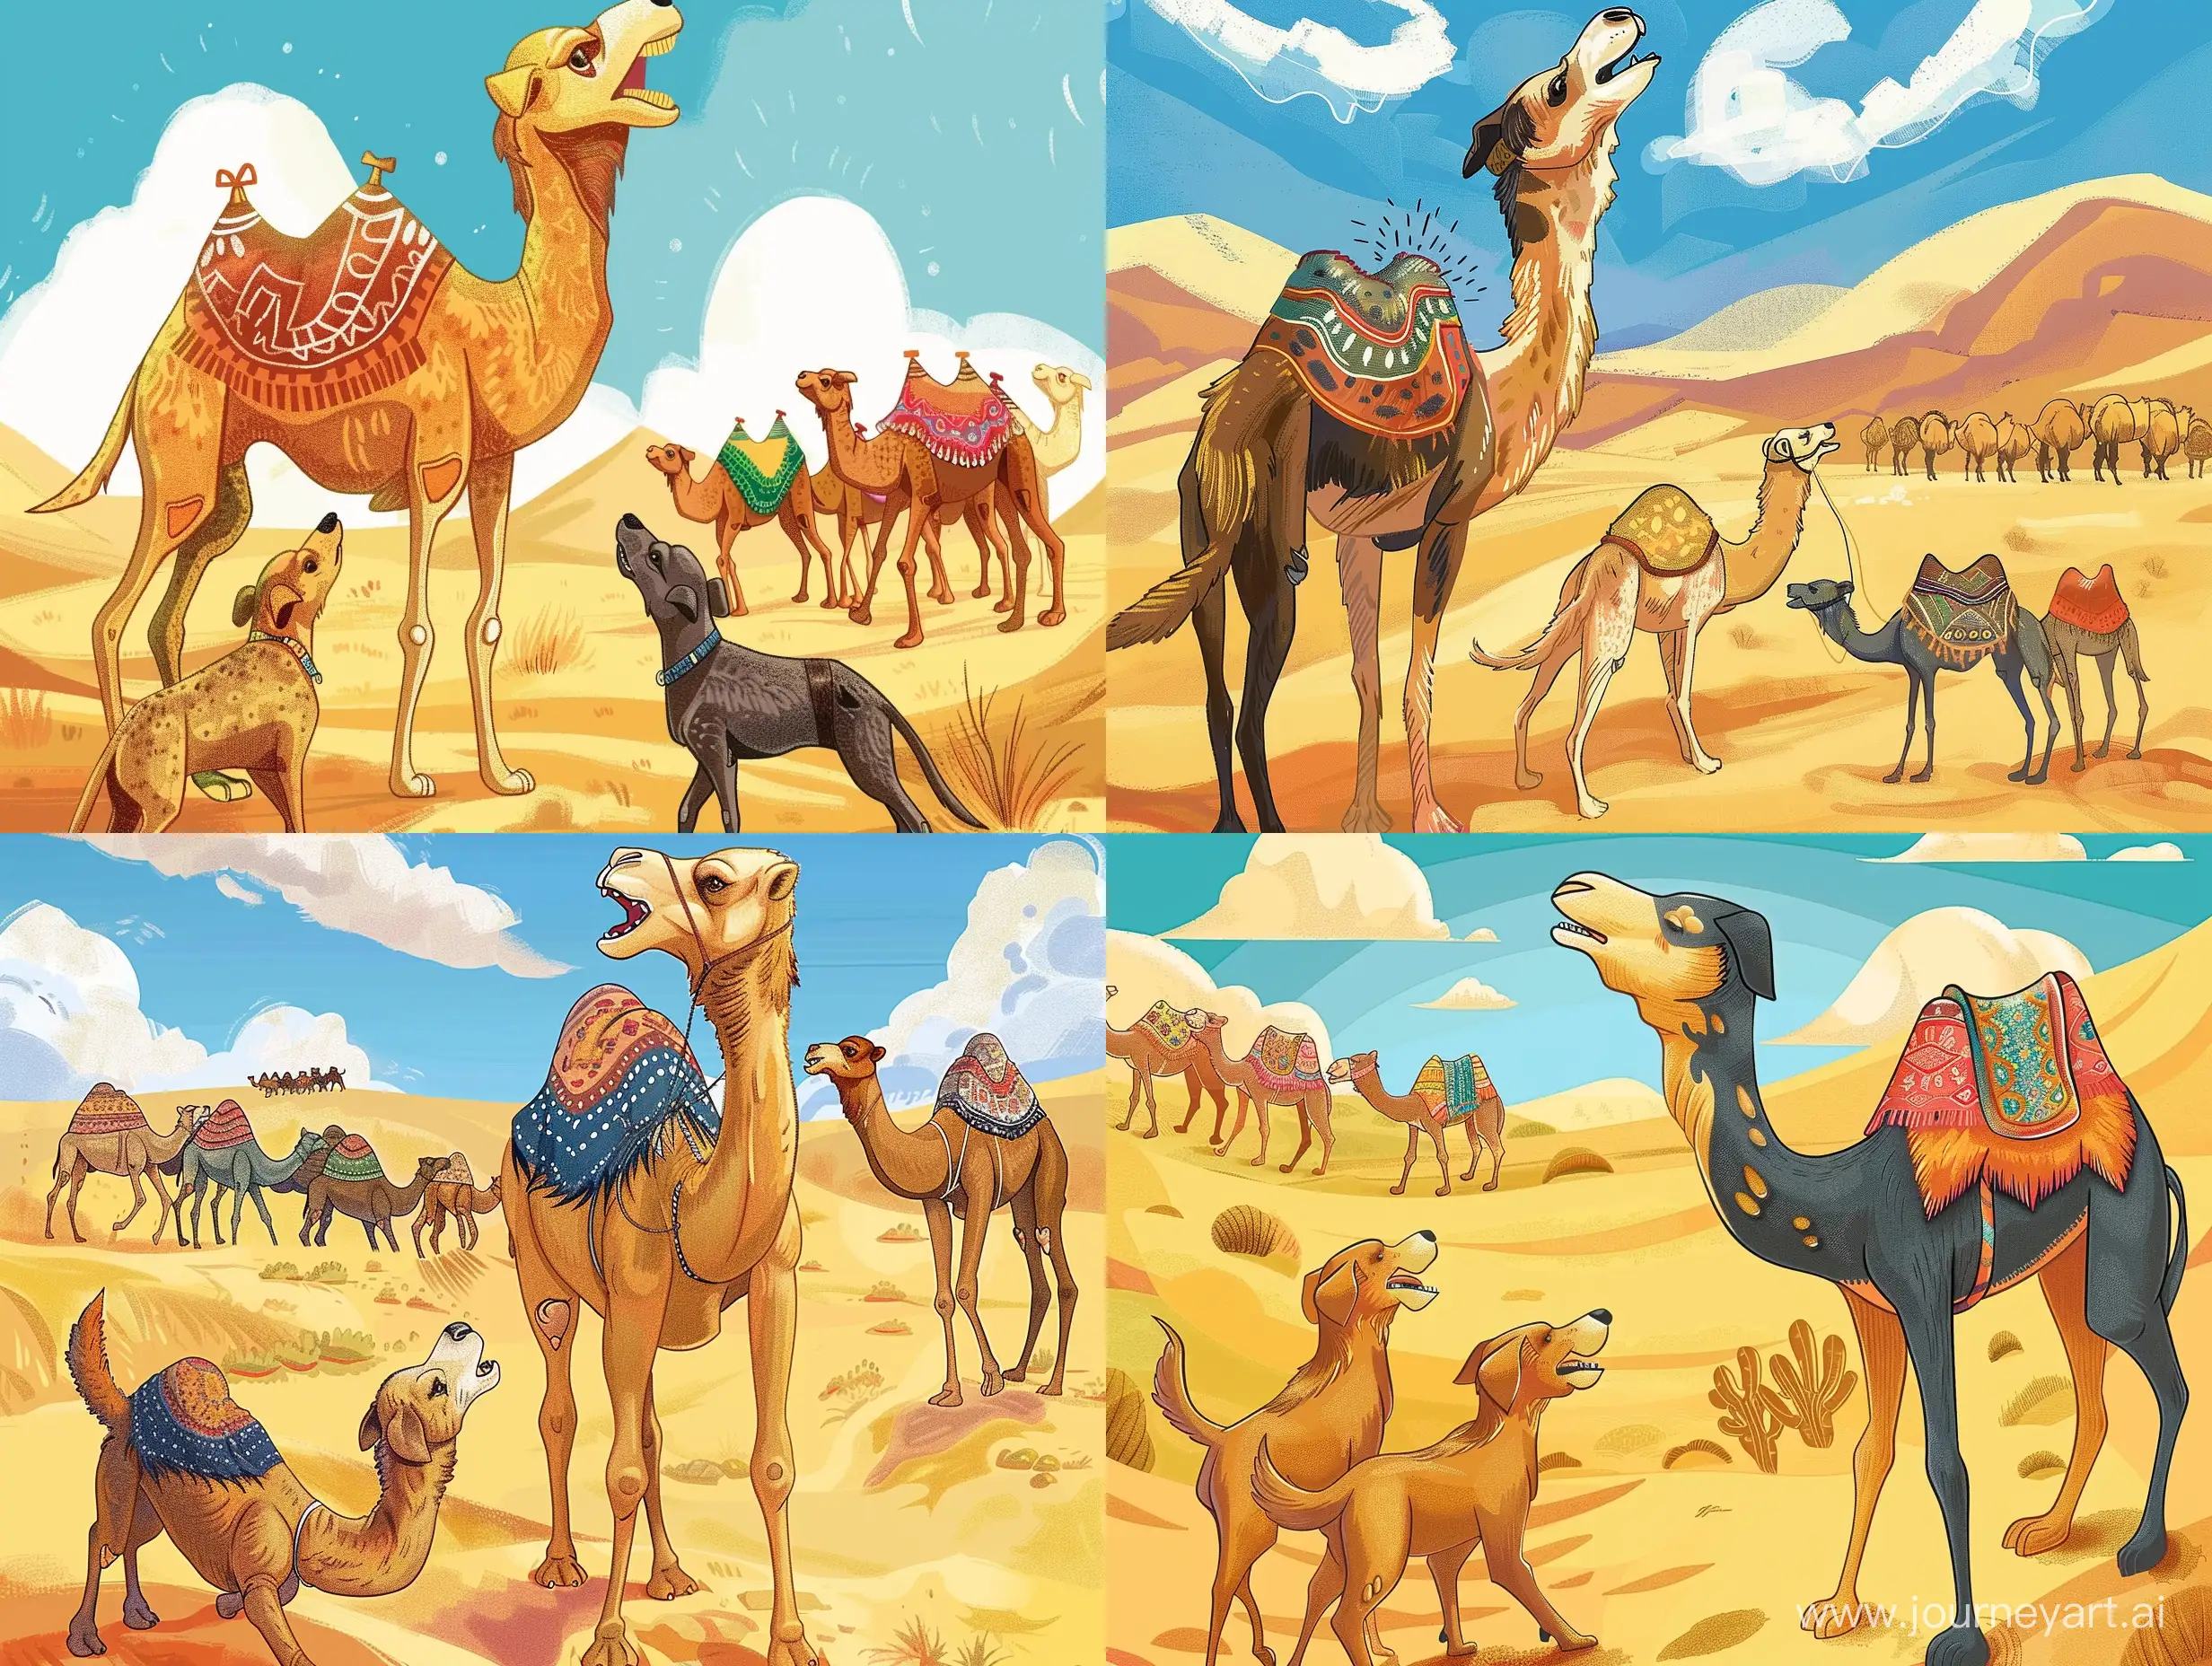 Иллюстрация 3 собаки лаят на караван верблюдов, верблюды идут спокойно по пустыни - sref https://i.pinimg.com/564x/25/5c/59/255c59aa45cb39018e64ed73d86c72fc.jpg